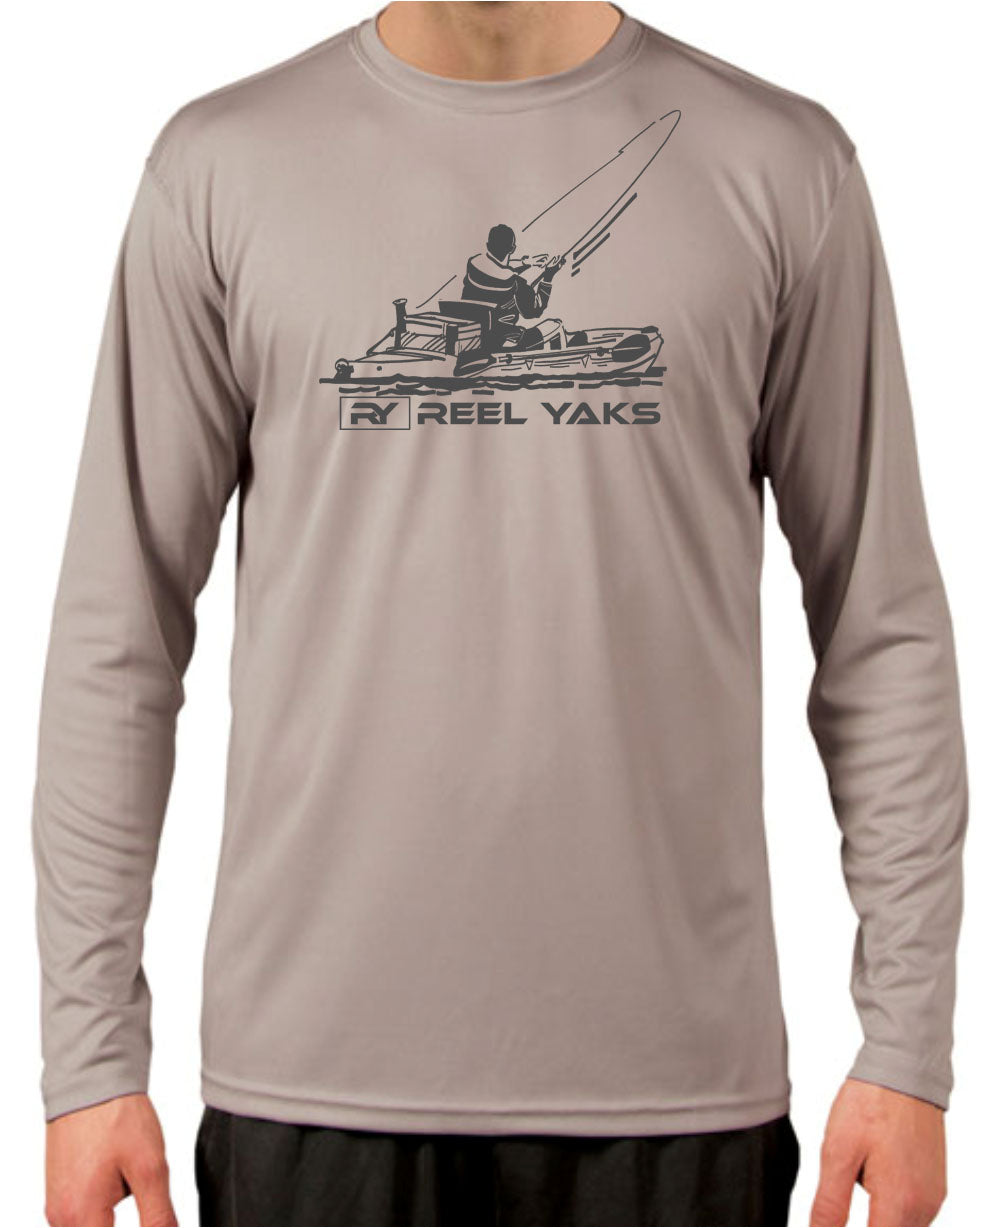 Long sleeve kayak fishing shirt with SPF50 sun protection